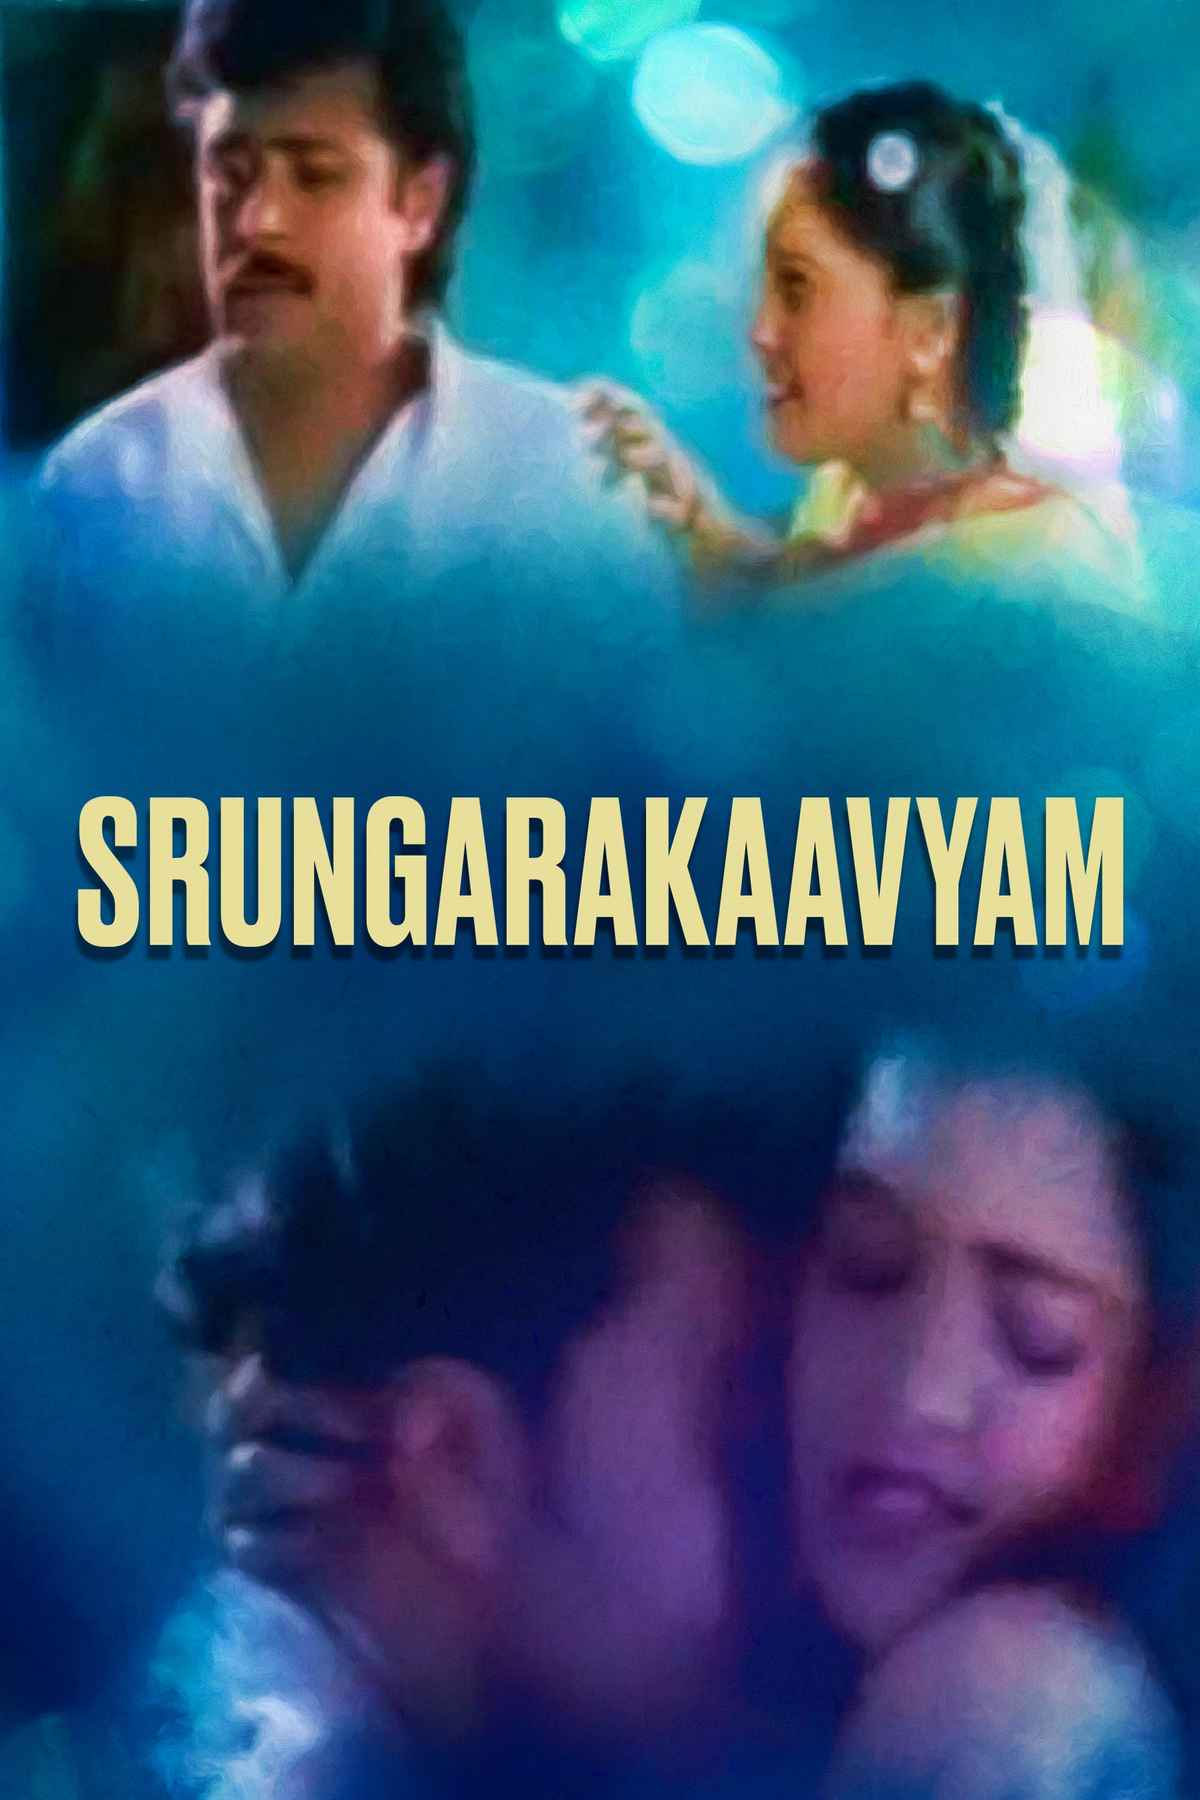 Srungarakaavyam